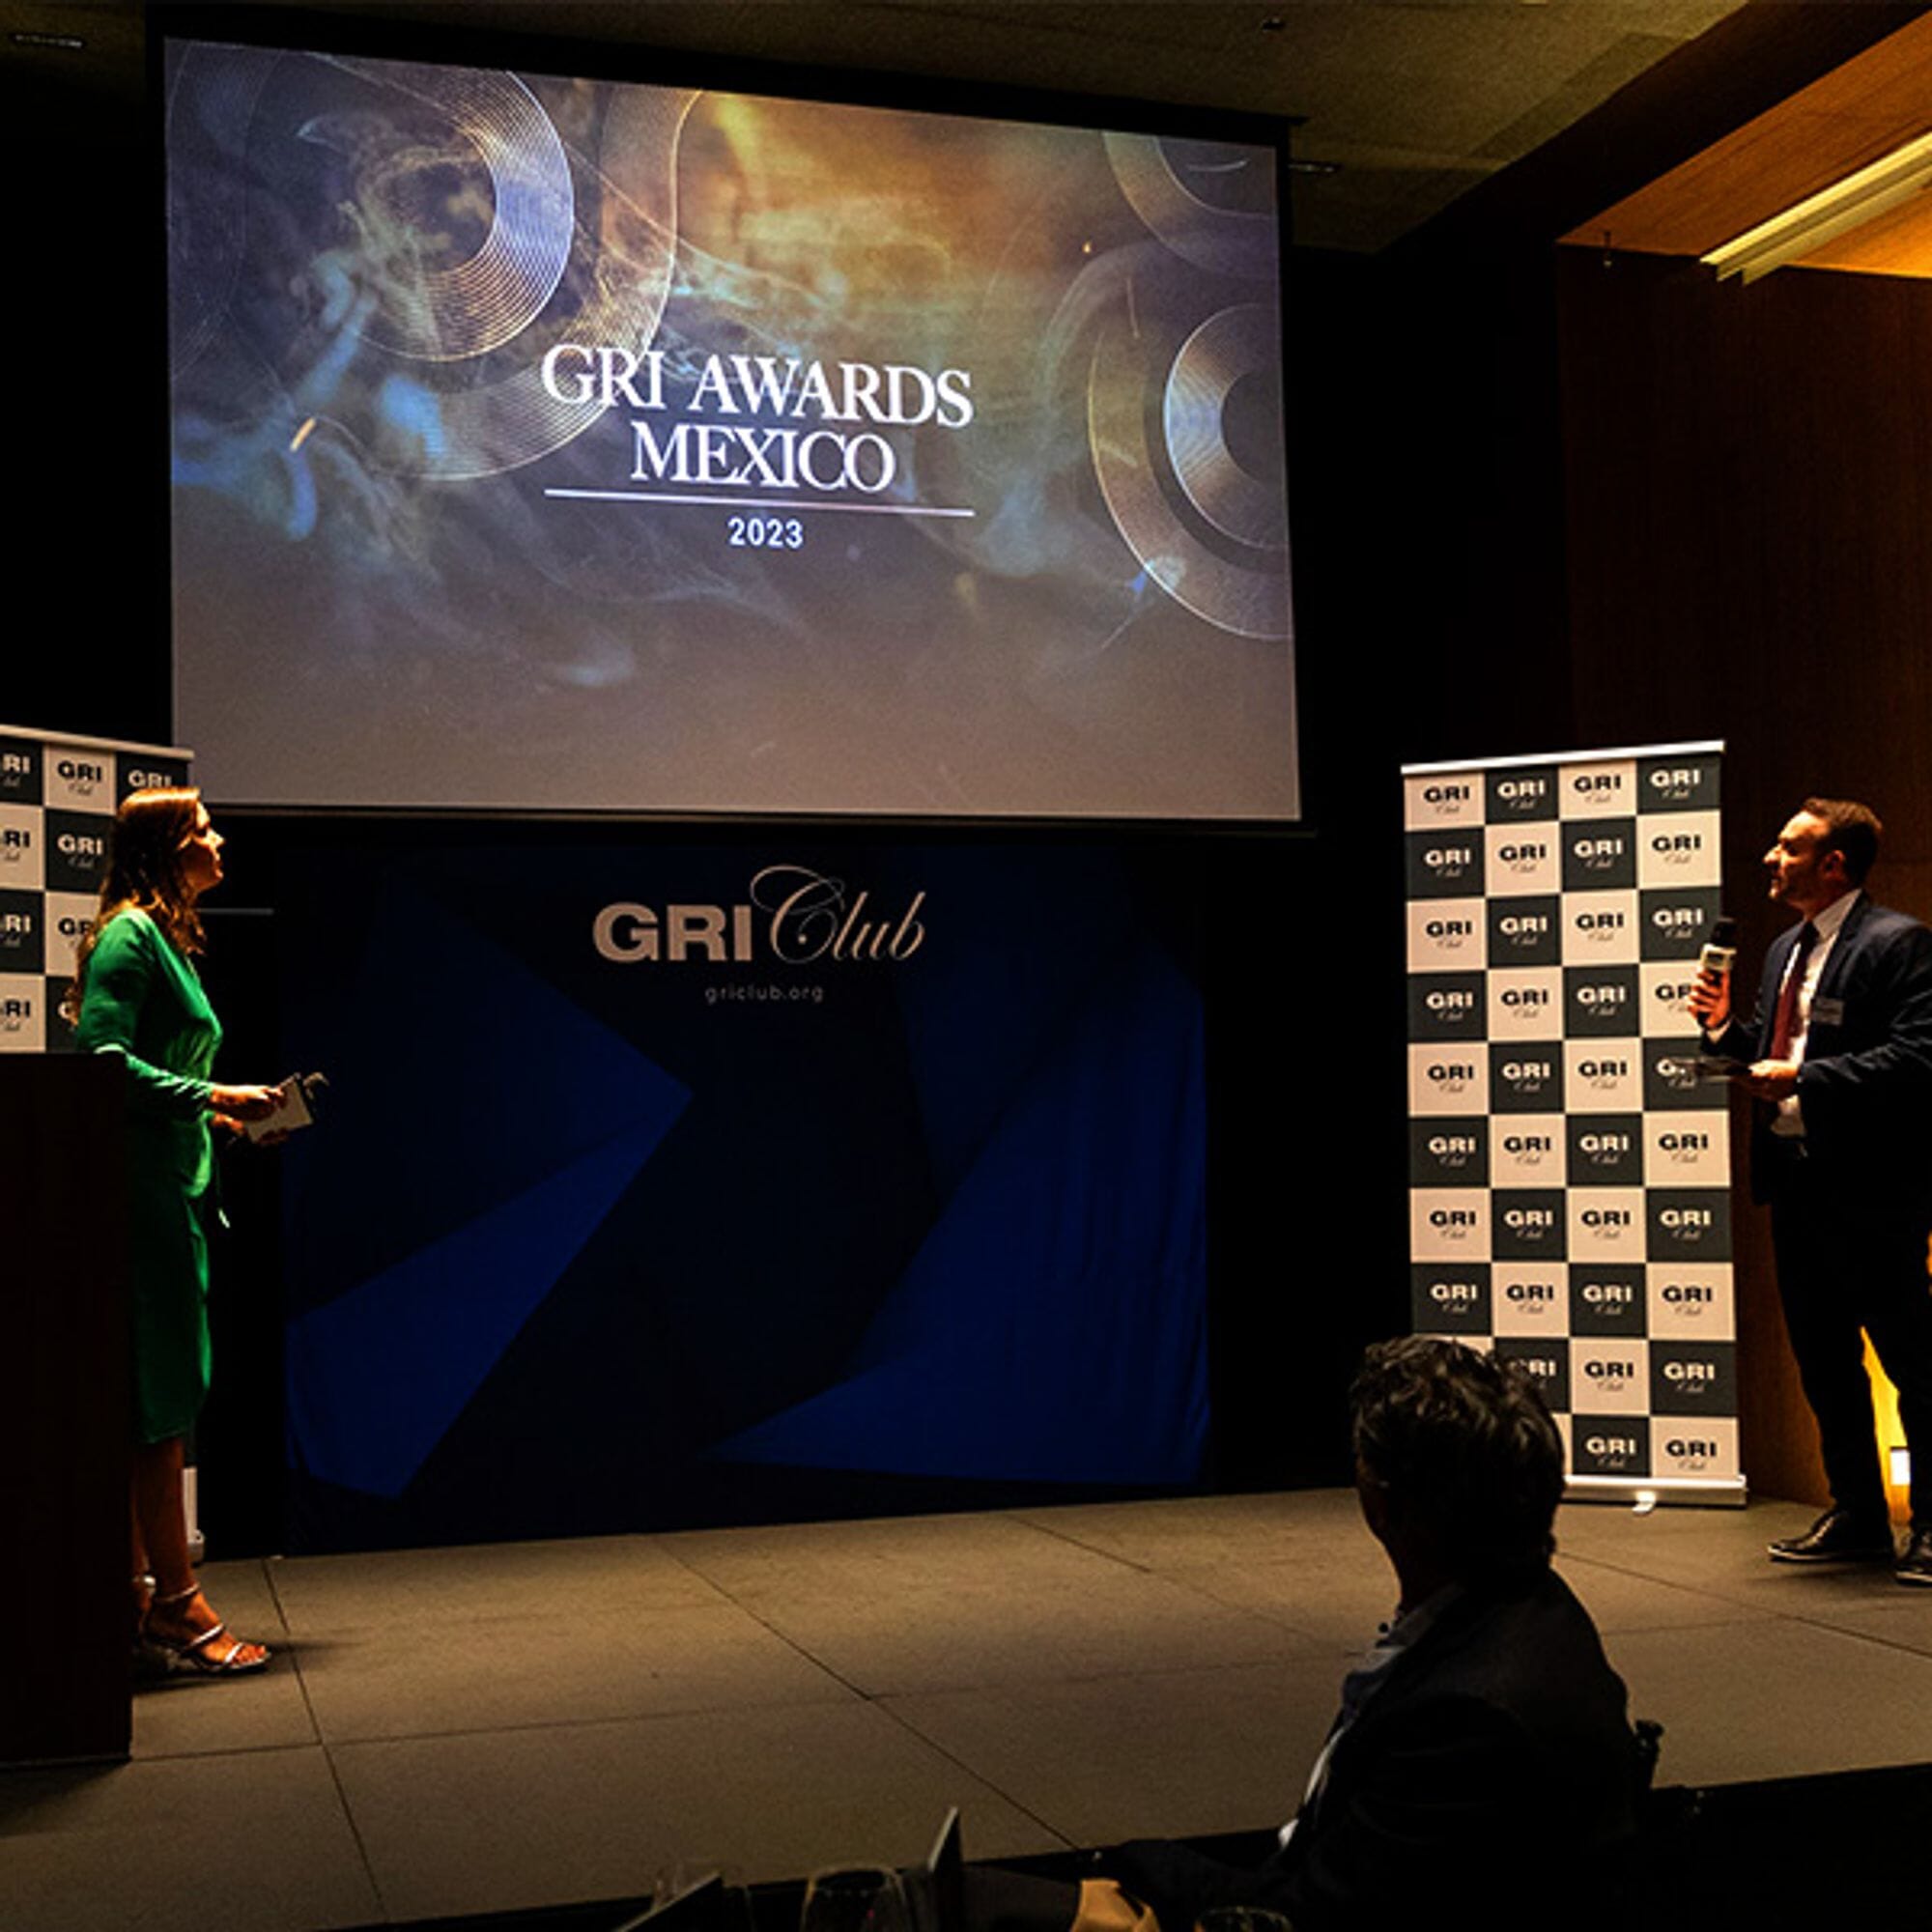 GRI Awards Mexico 2023: consulta la lista completa de ganadores